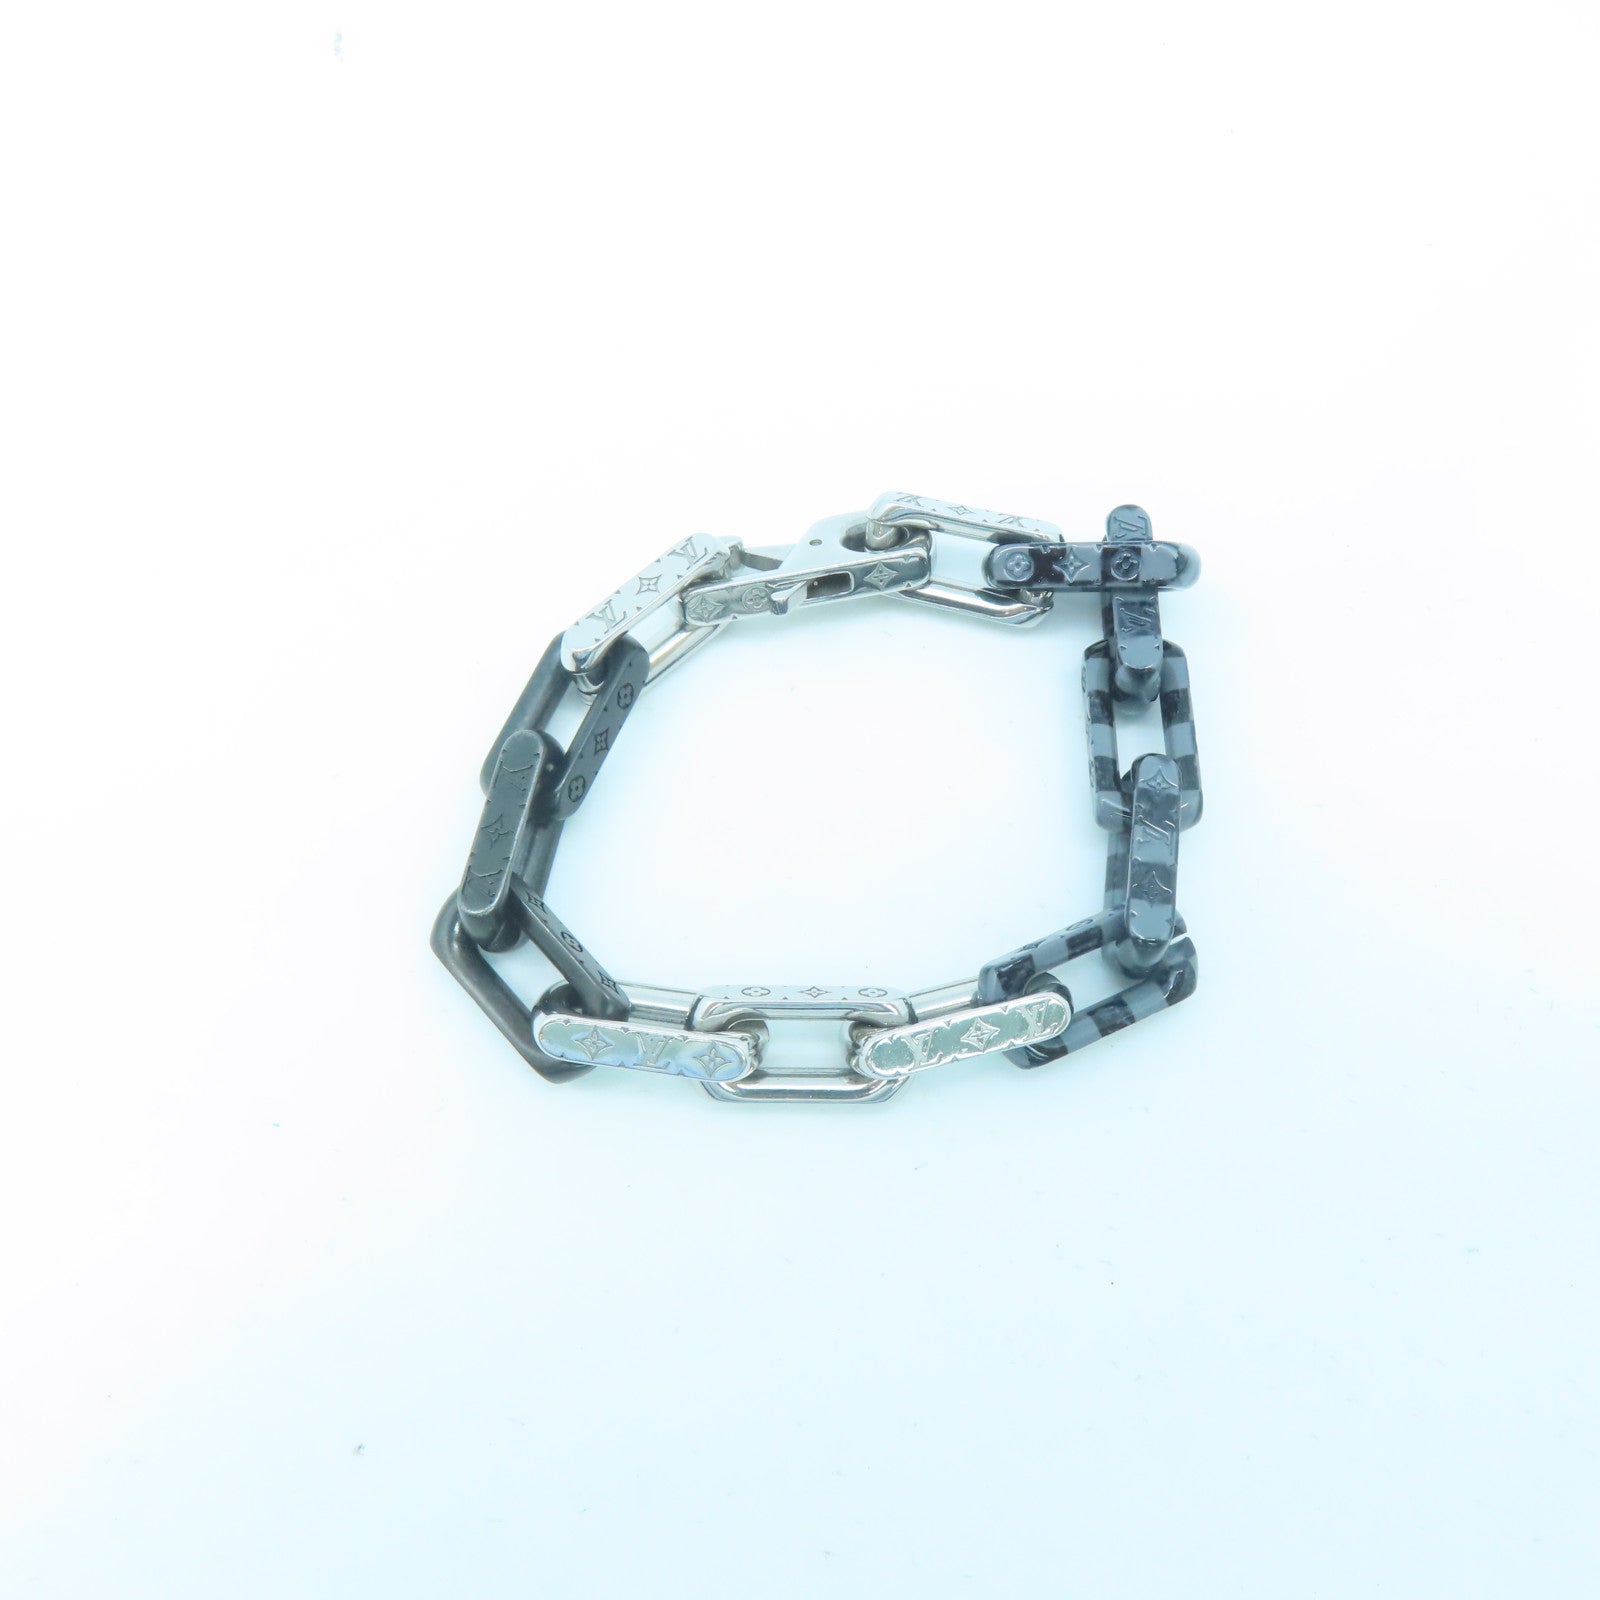 Damier Chain Bracelet S00 - Fashion Jewelry MP3191